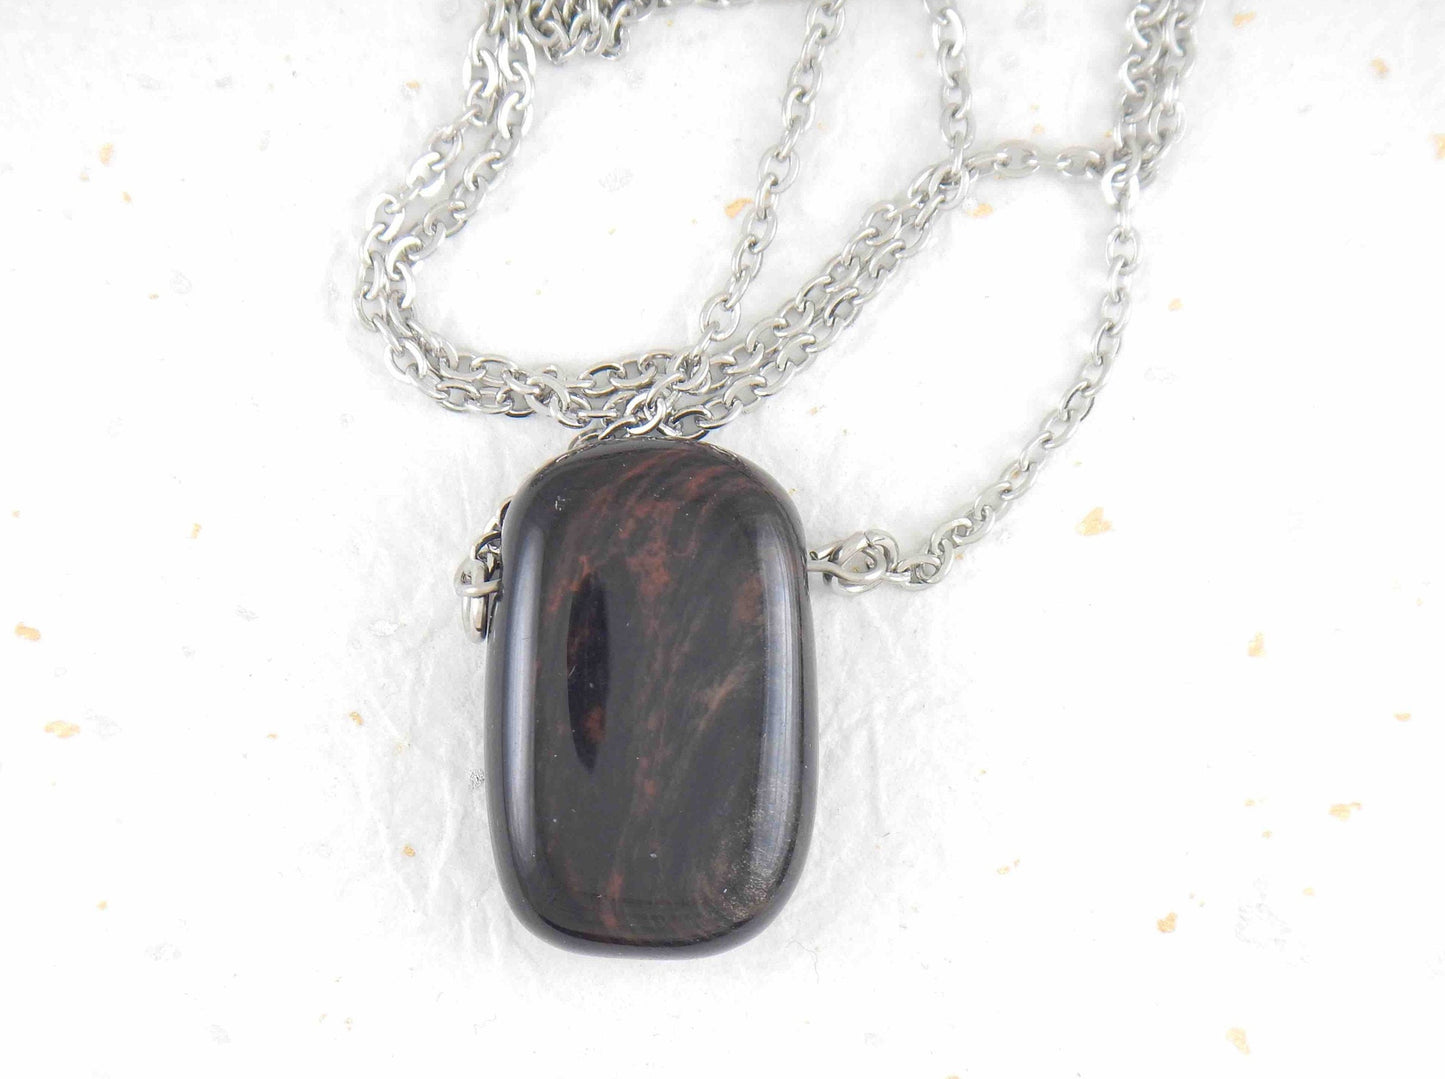 Collier 26 po à pendentif rectangle arrondi de pierre obsidienne or rouge, chaîne acier inoxydable